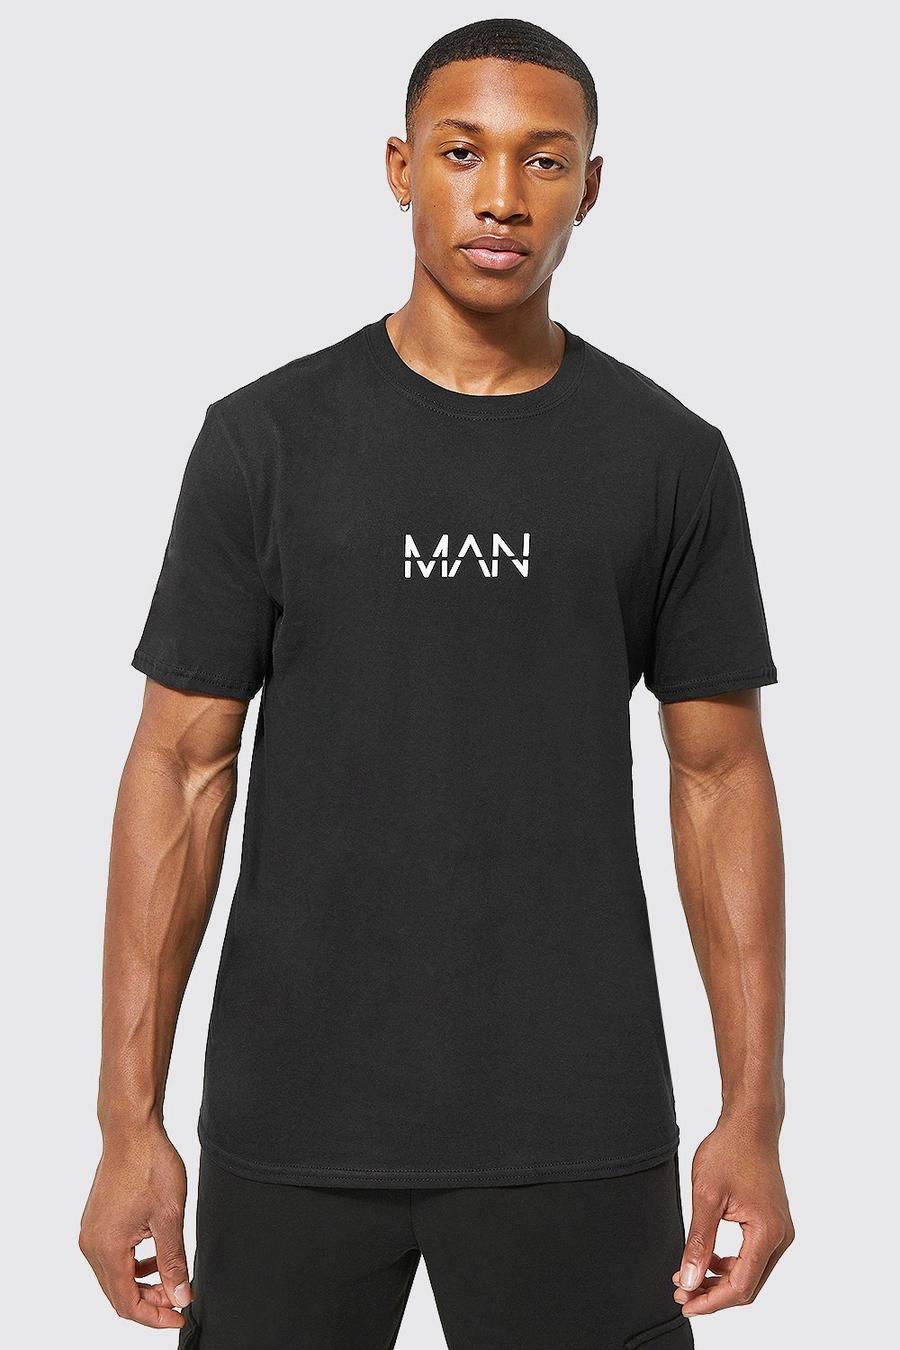 Camiseta MAN Original, Black nero